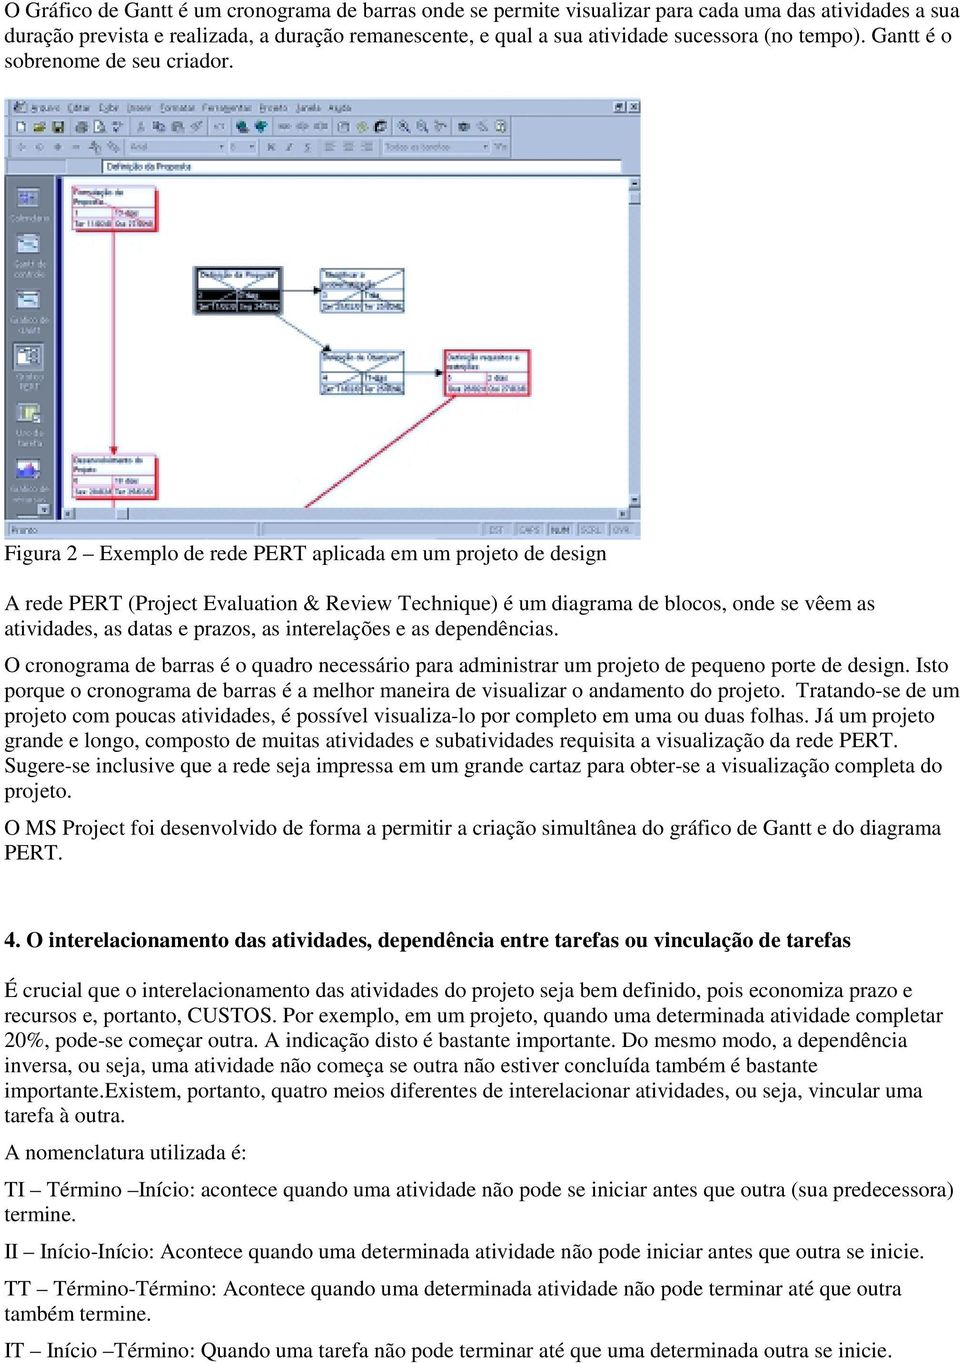 Figura 2 Exemplo de rede PERT aplicada em um projeto de design A rede PERT (Project Evaluation & Review Technique) é um diagrama de blocos, onde se vêem as atividades, as datas e prazos, as